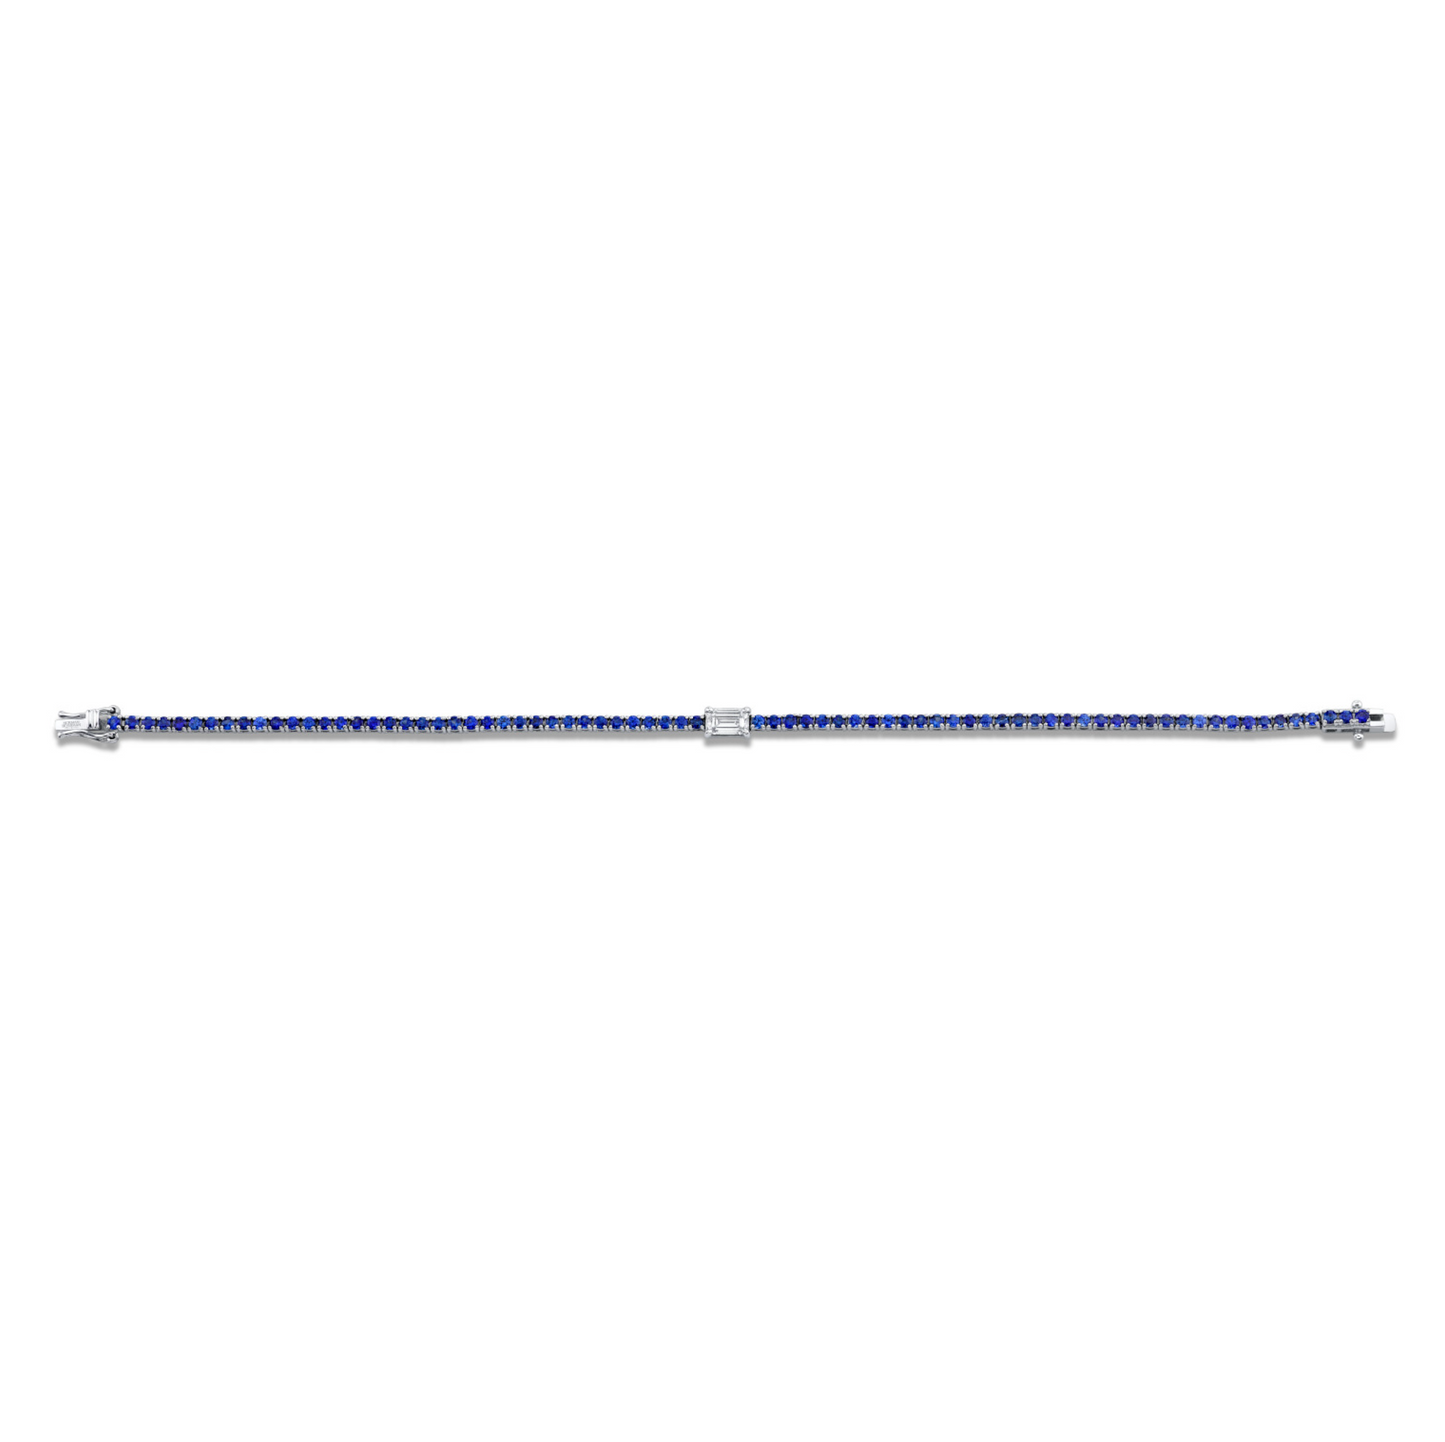 3.31 Carat 18k White Gold Straight Line Bracelet